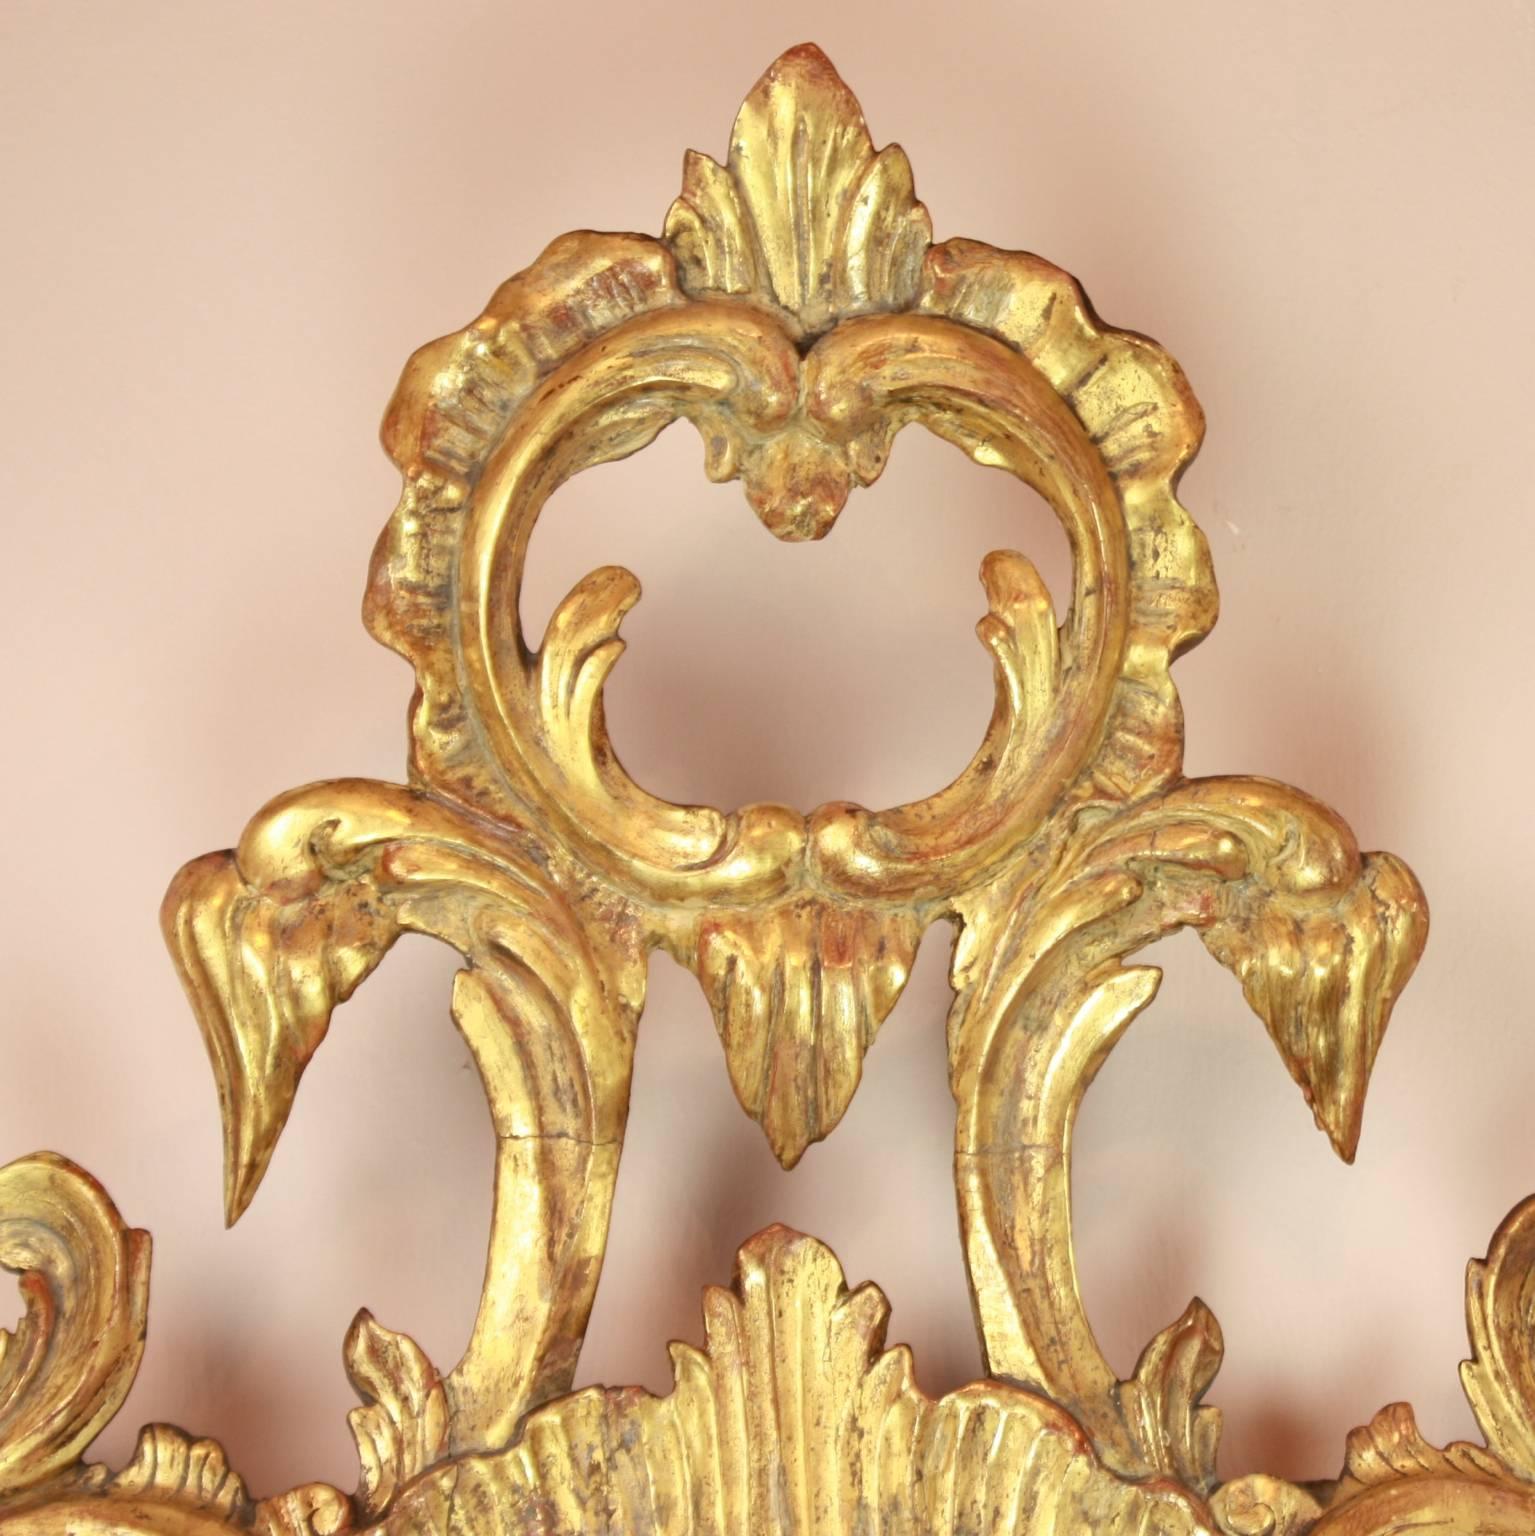 Ein Paar norditalienische Vergoldungsspiegel aus dem 18. Jahrhundert und ehemalige Girandolen oder Wandleuchter. Aufwändig geschnitzt in symmetrischer Form mit Blumen, Blättern, Ho-Ho-Vögeln, Rankenwerk und Rocaillen. An der Unterseite des Spiegels